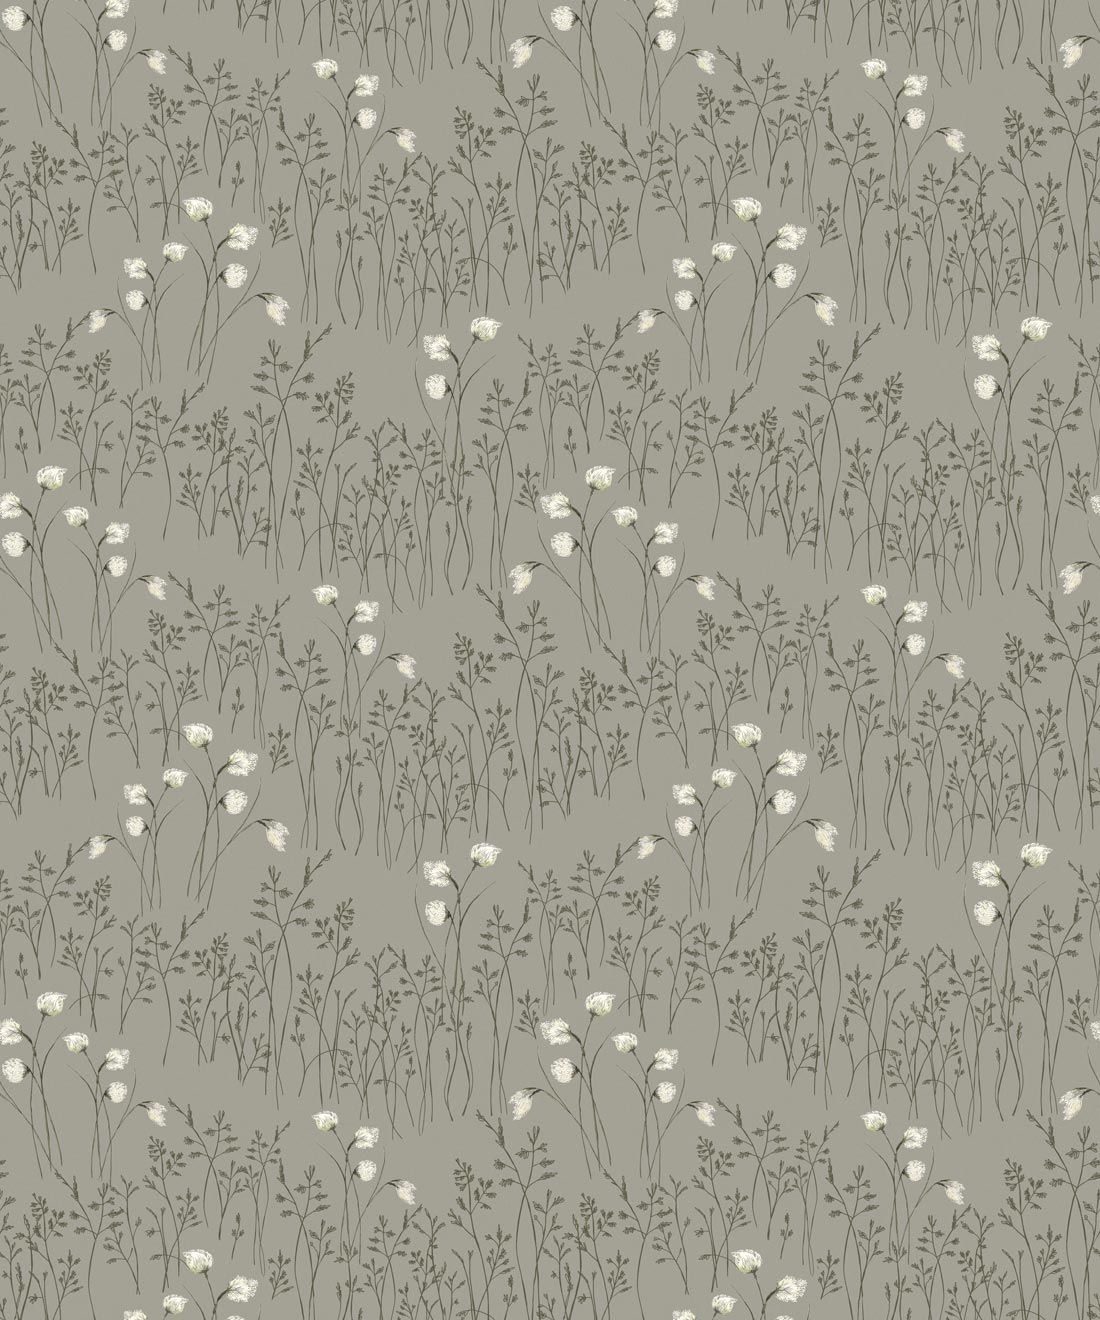 Cotton Grass Wallpaper